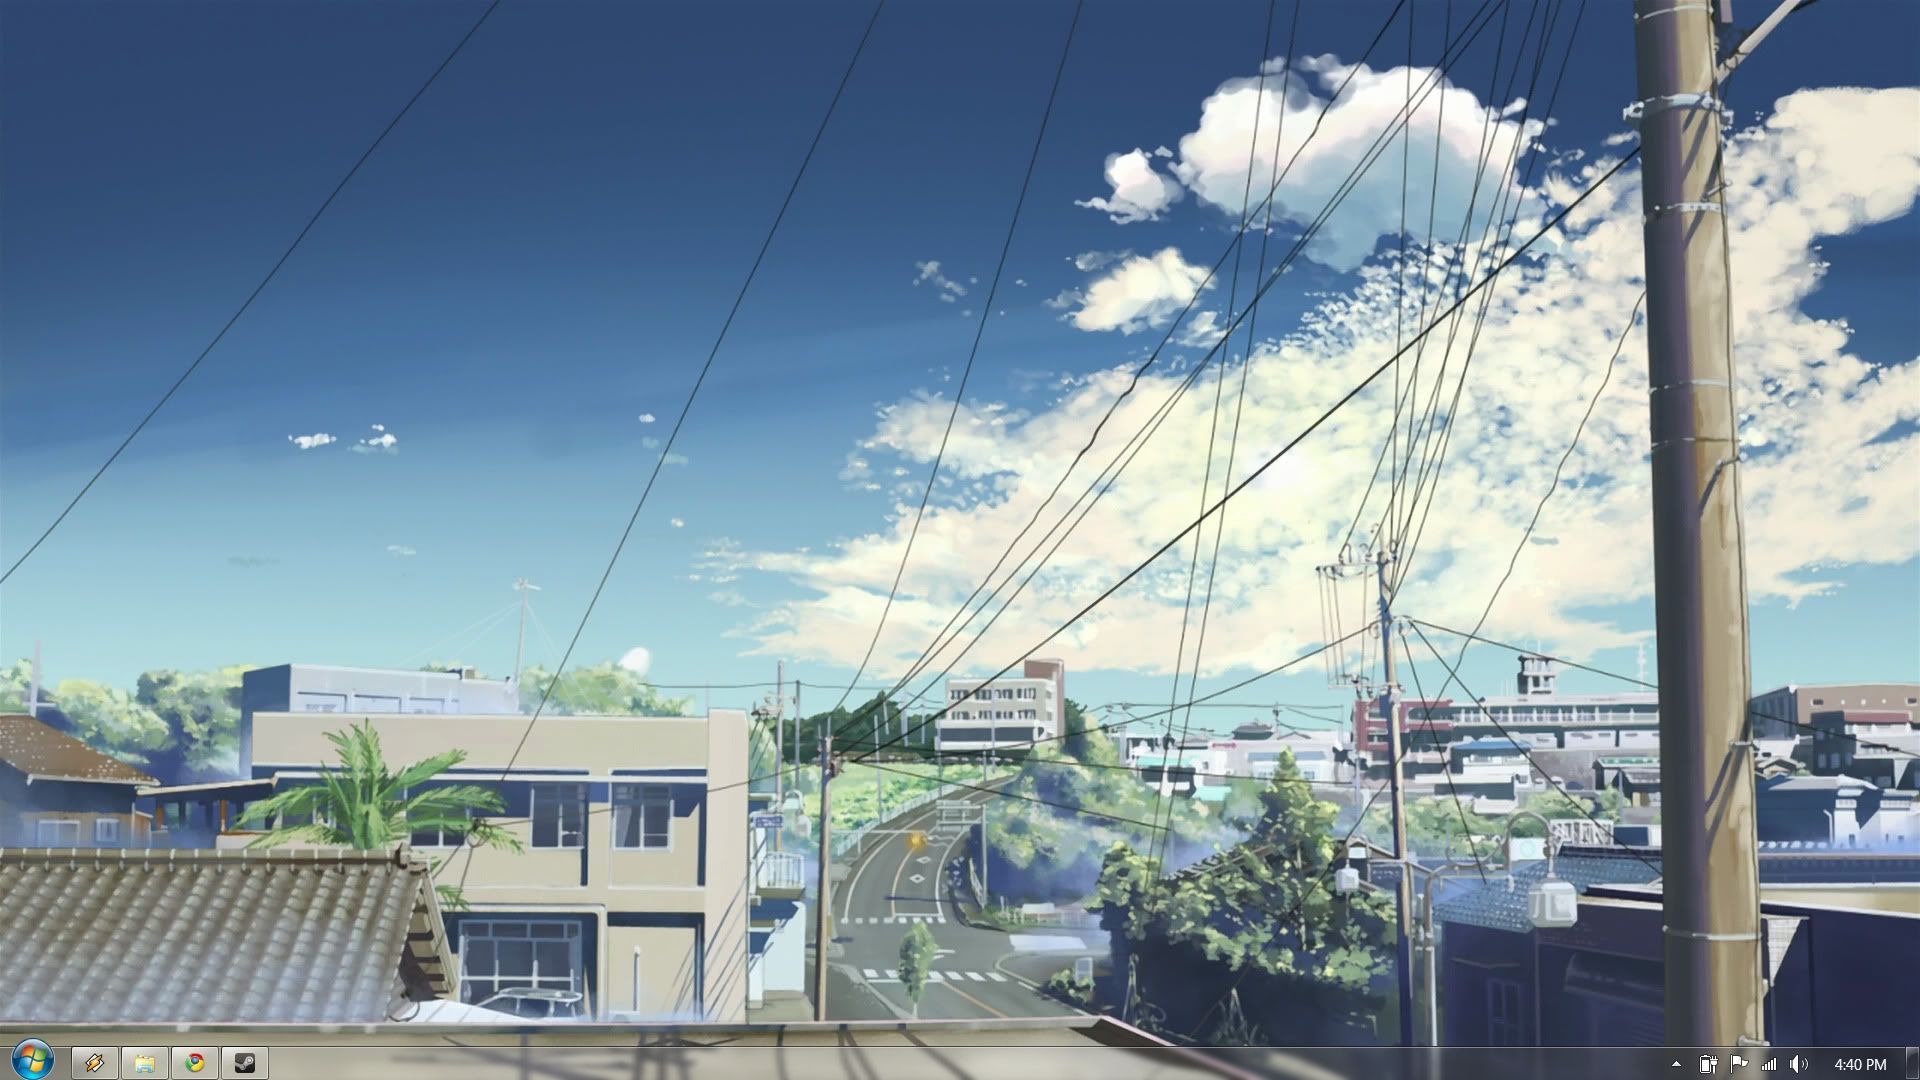 Anime Aesthetic Desktop Wallpaper